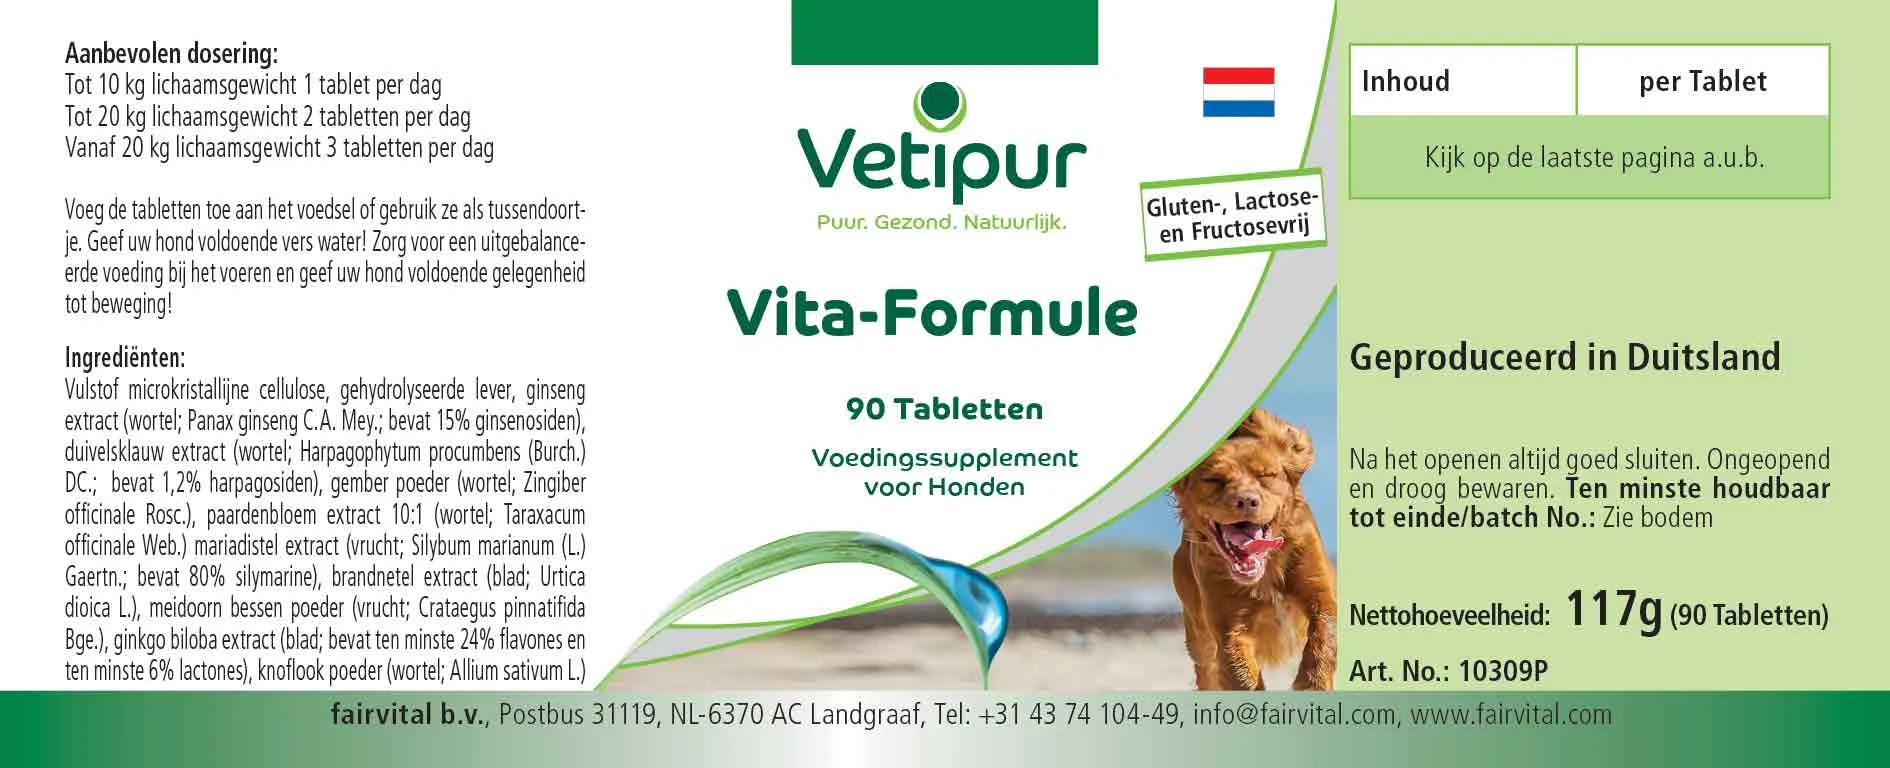 Formula di vita - 90 compresse per cani | Vetipur